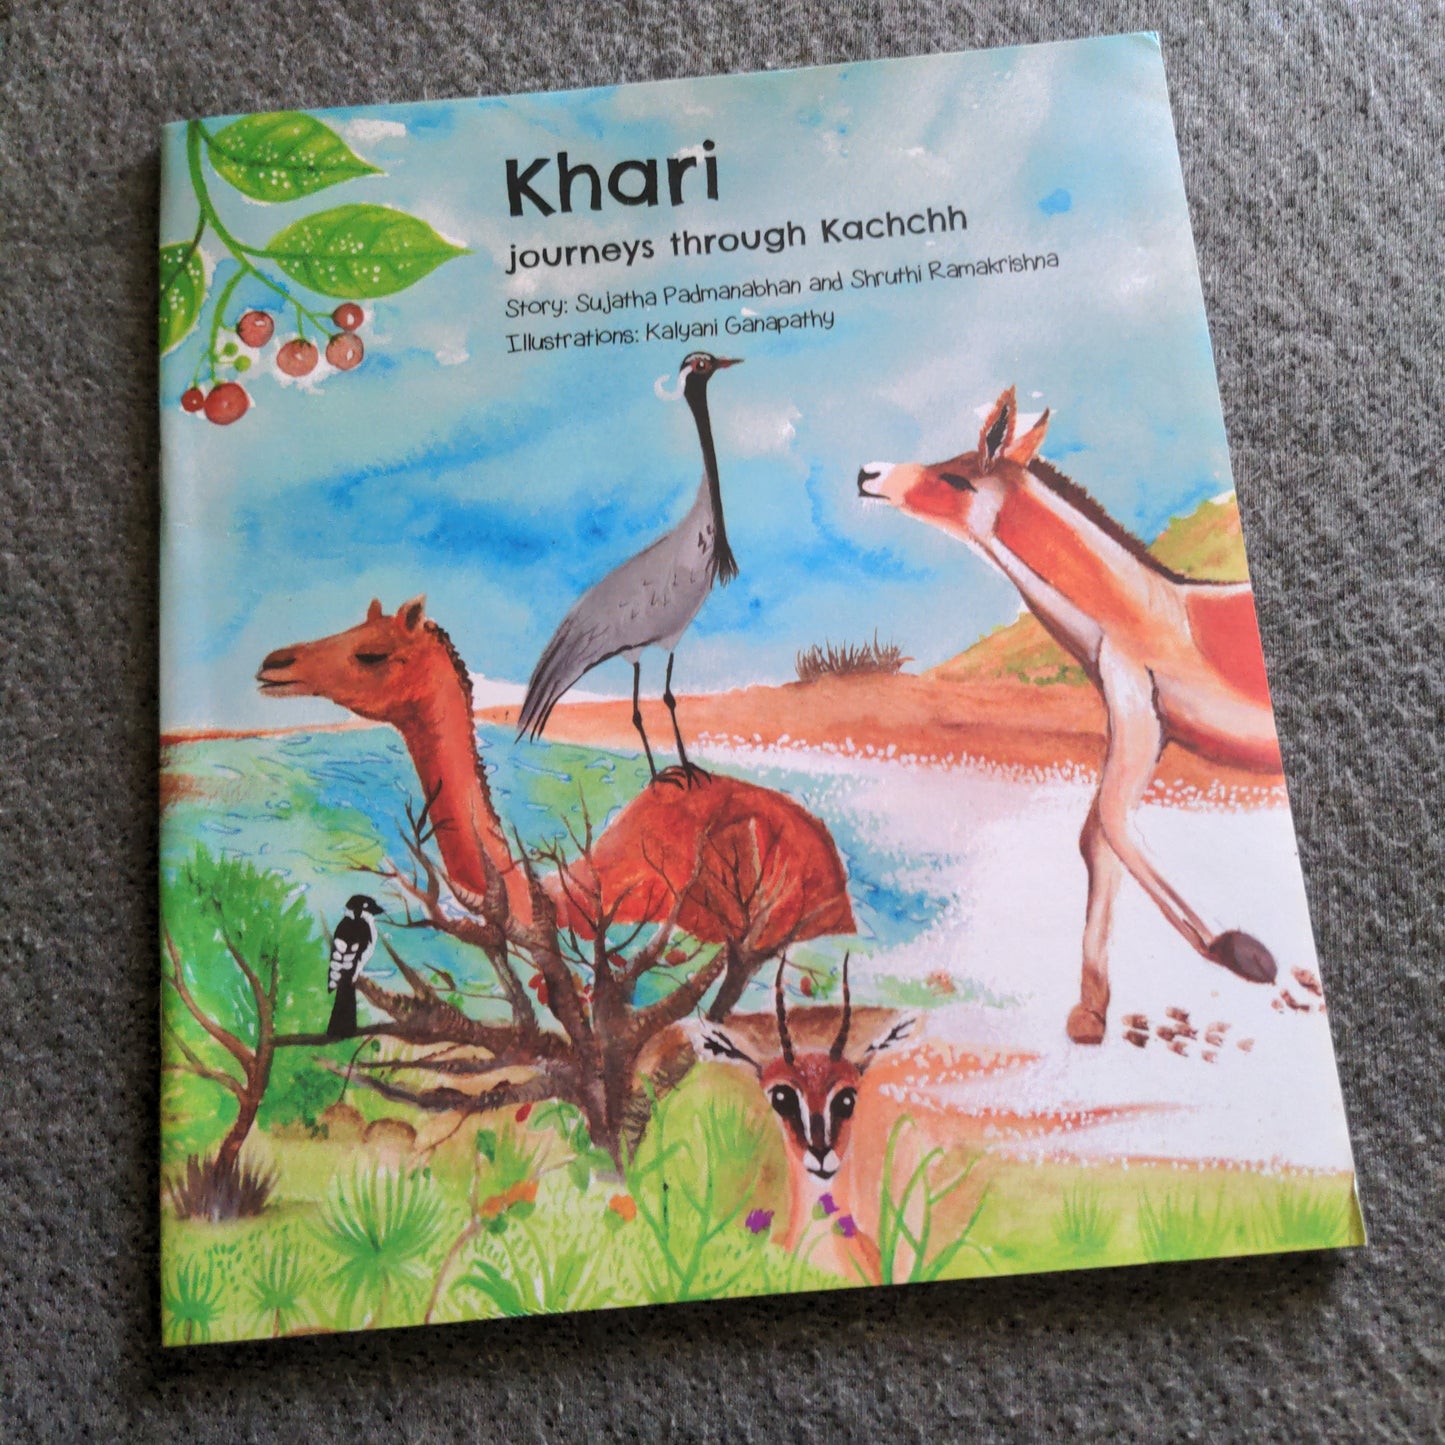 Khari Journeys through Kuchh